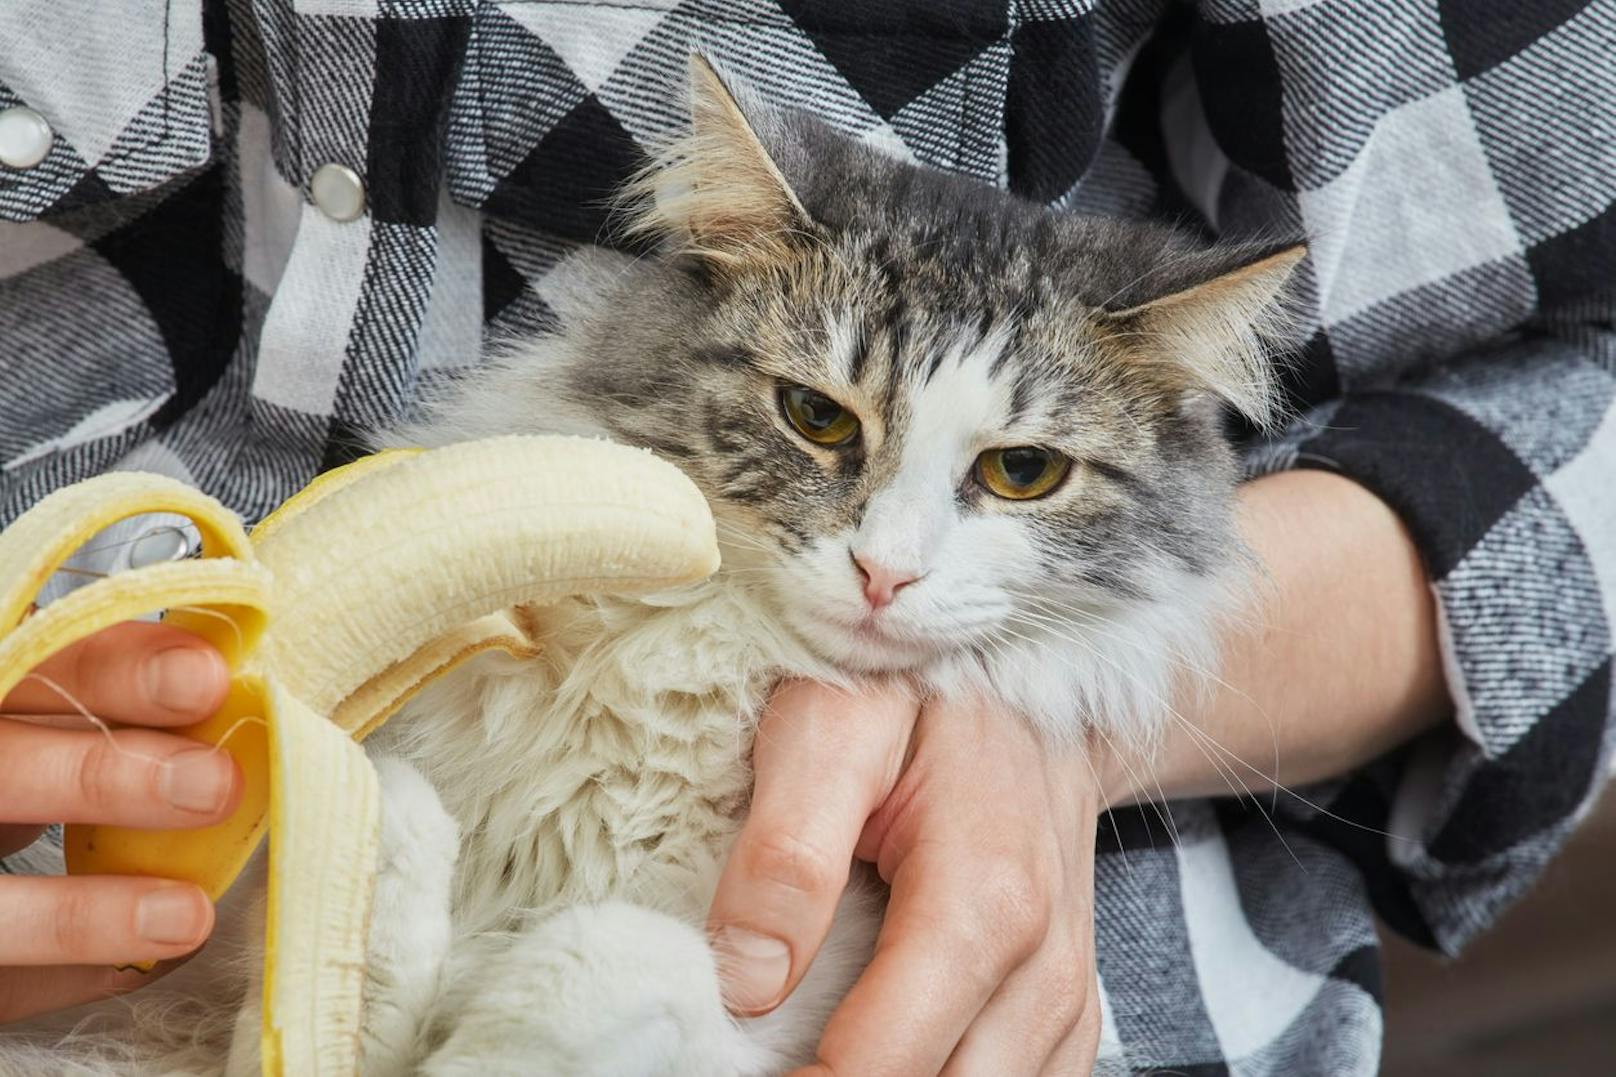 Die <strong>Banane</strong> wird auch von Katzen in der Regel gern genommen. Ein Stückchen einer reifen Frucht ist gesund und gilt als gesunder Snack zwischendurch. Einfach versuchen!